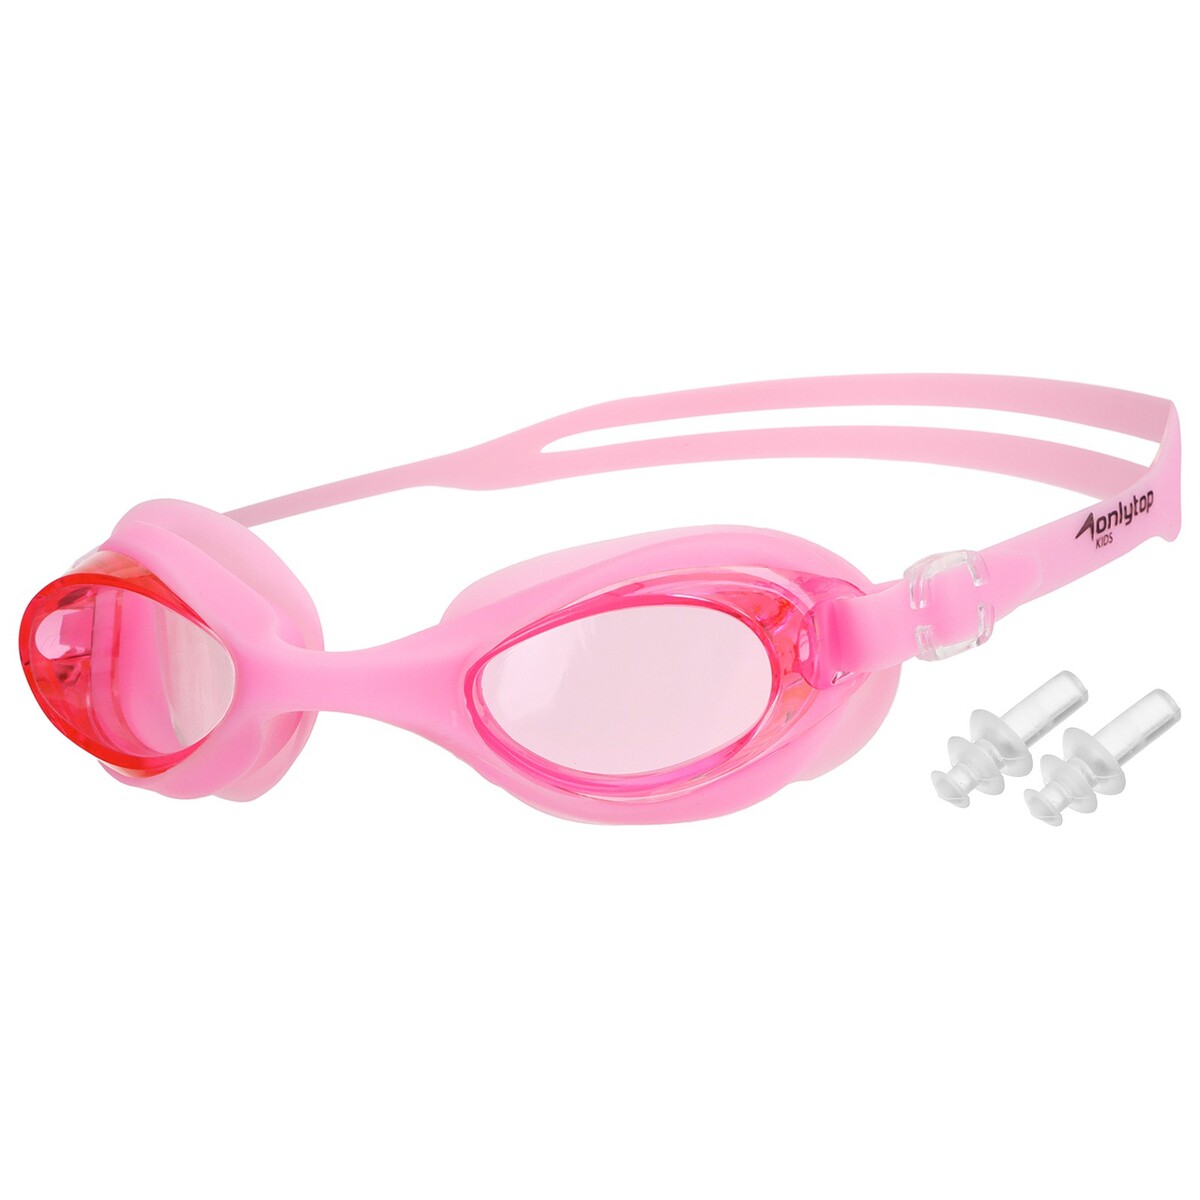 Очки для плавания onlytop, беруши, цвет светло-розовый очки для плавания onlytop беруши светло розовый